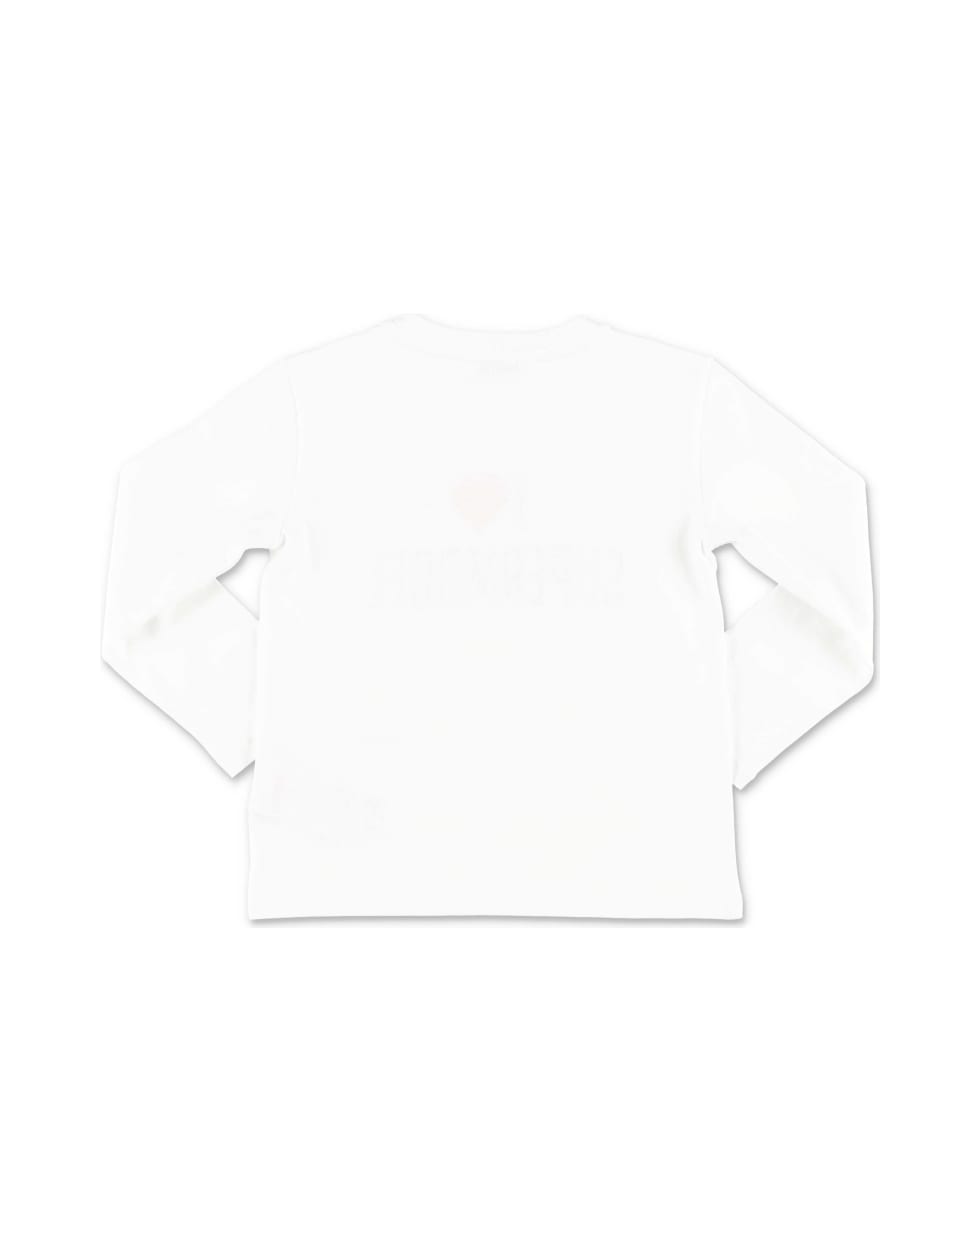 Dolce & Gabbana T-shirt Bianca In Jersey Di Cotone Tema 90s - Bianco